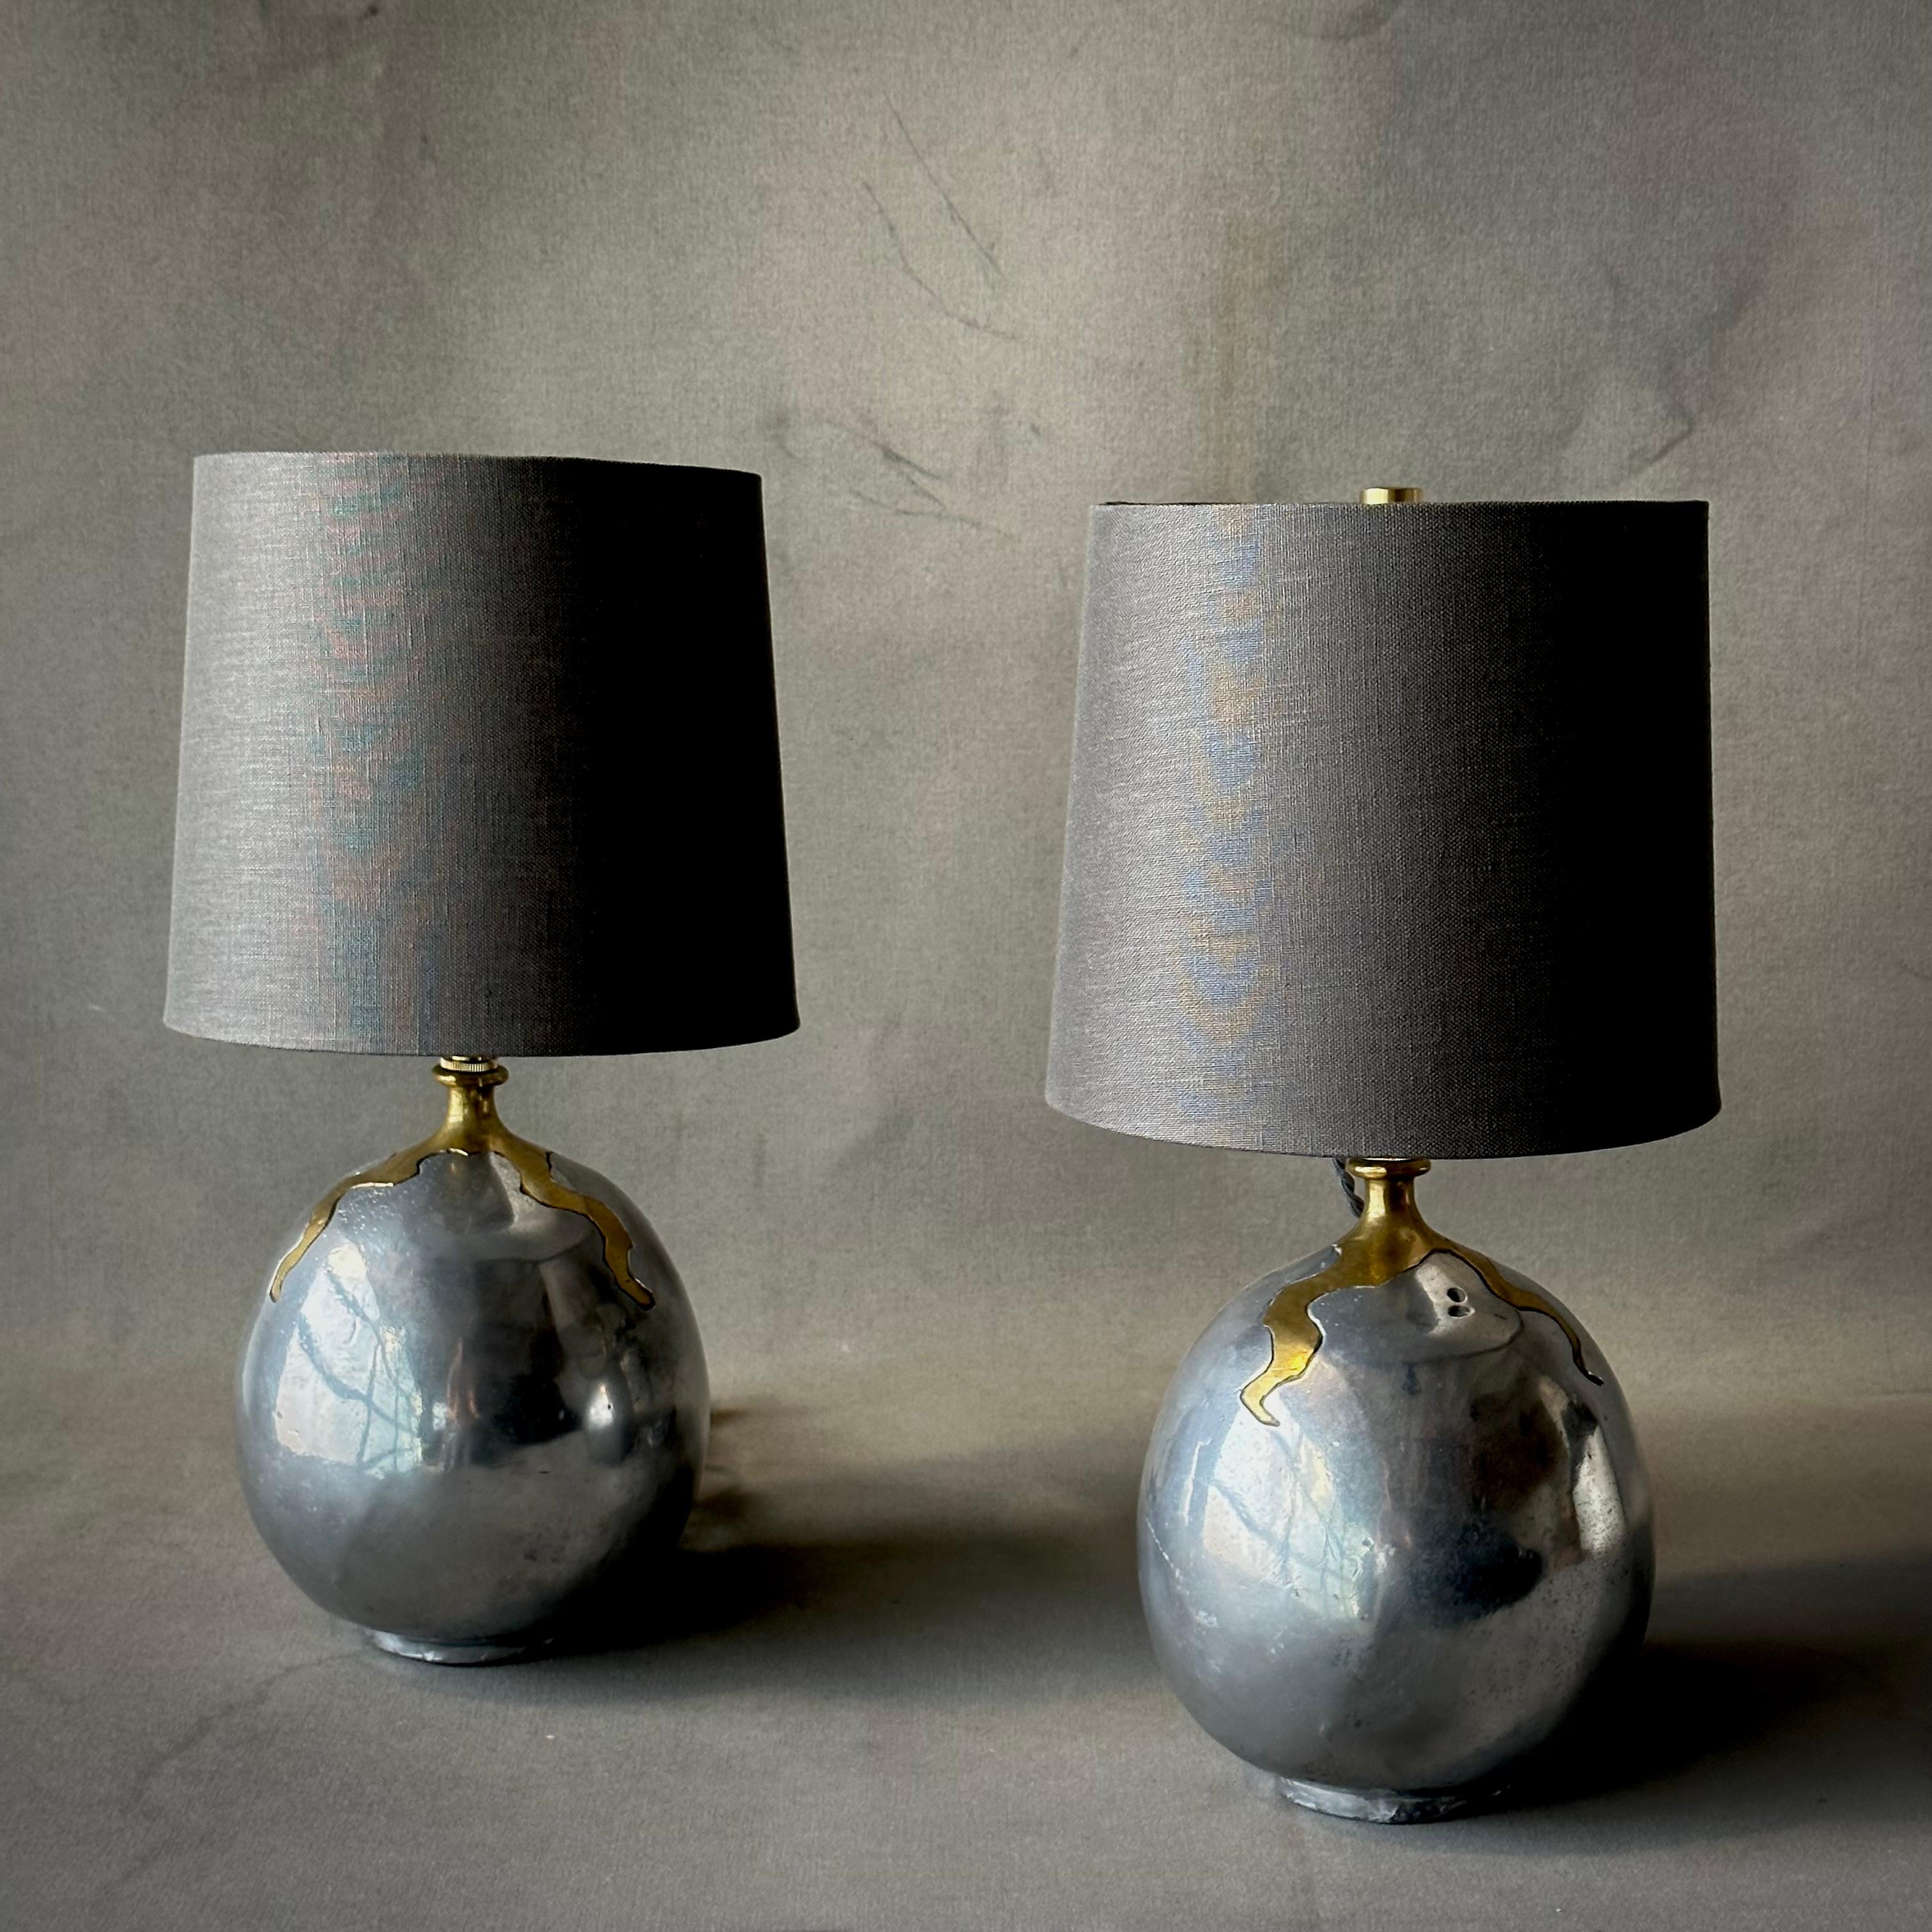 Ein Paar handgegossene brutalistische Aluminium-Tischlampen aus den 1970er Jahren von David Marshall. Diese vielseitigen Leuchten sind stark und organisch zugleich und erinnern an Elsa Peretti und Brancusi. Inklusive zeitgenössischer belgischer